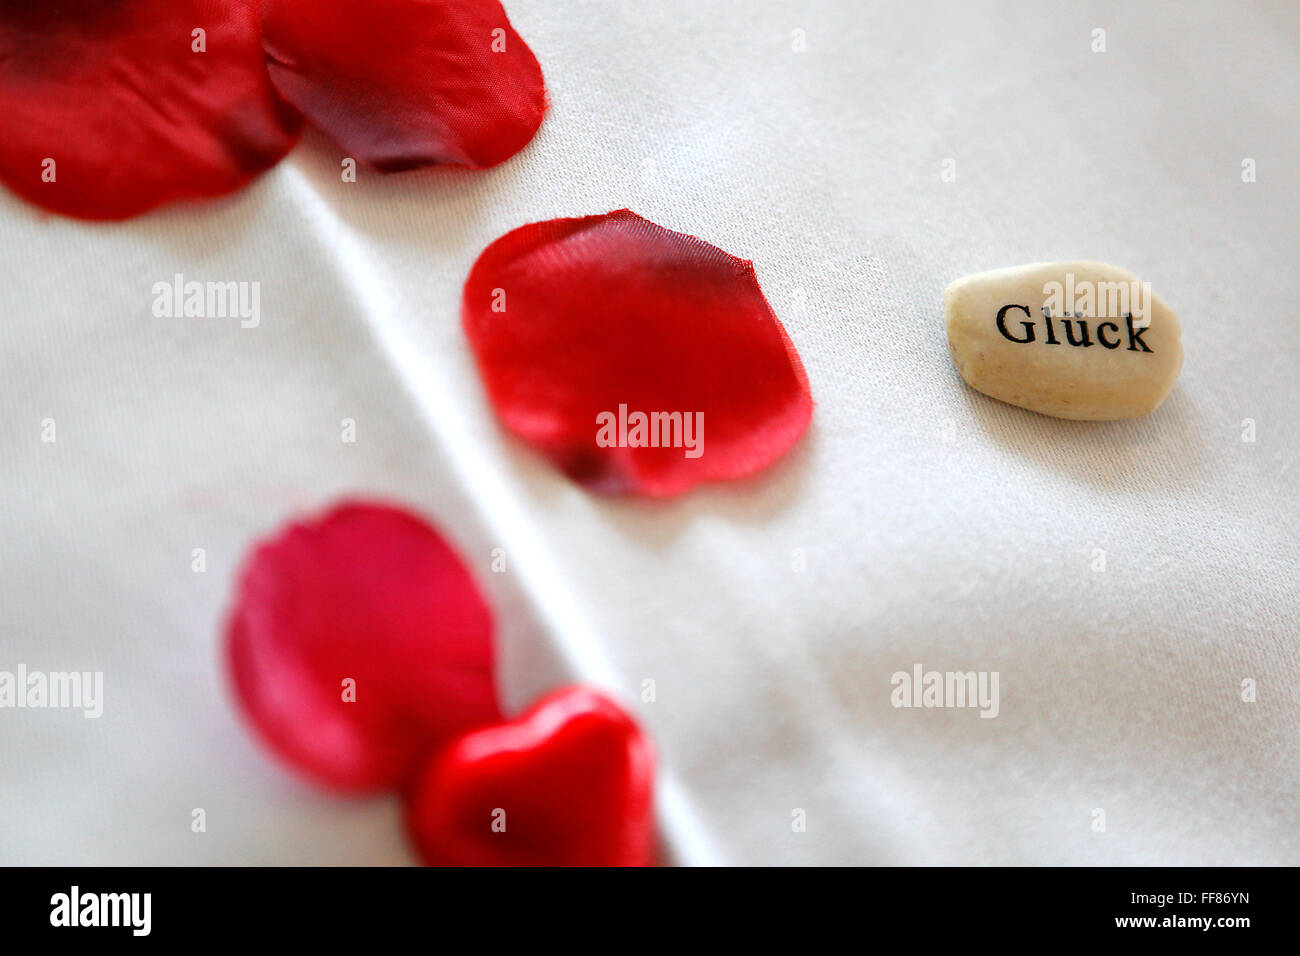 Glück, geschrieben auf einem Stein mit roten Rosenblättern Stockfoto